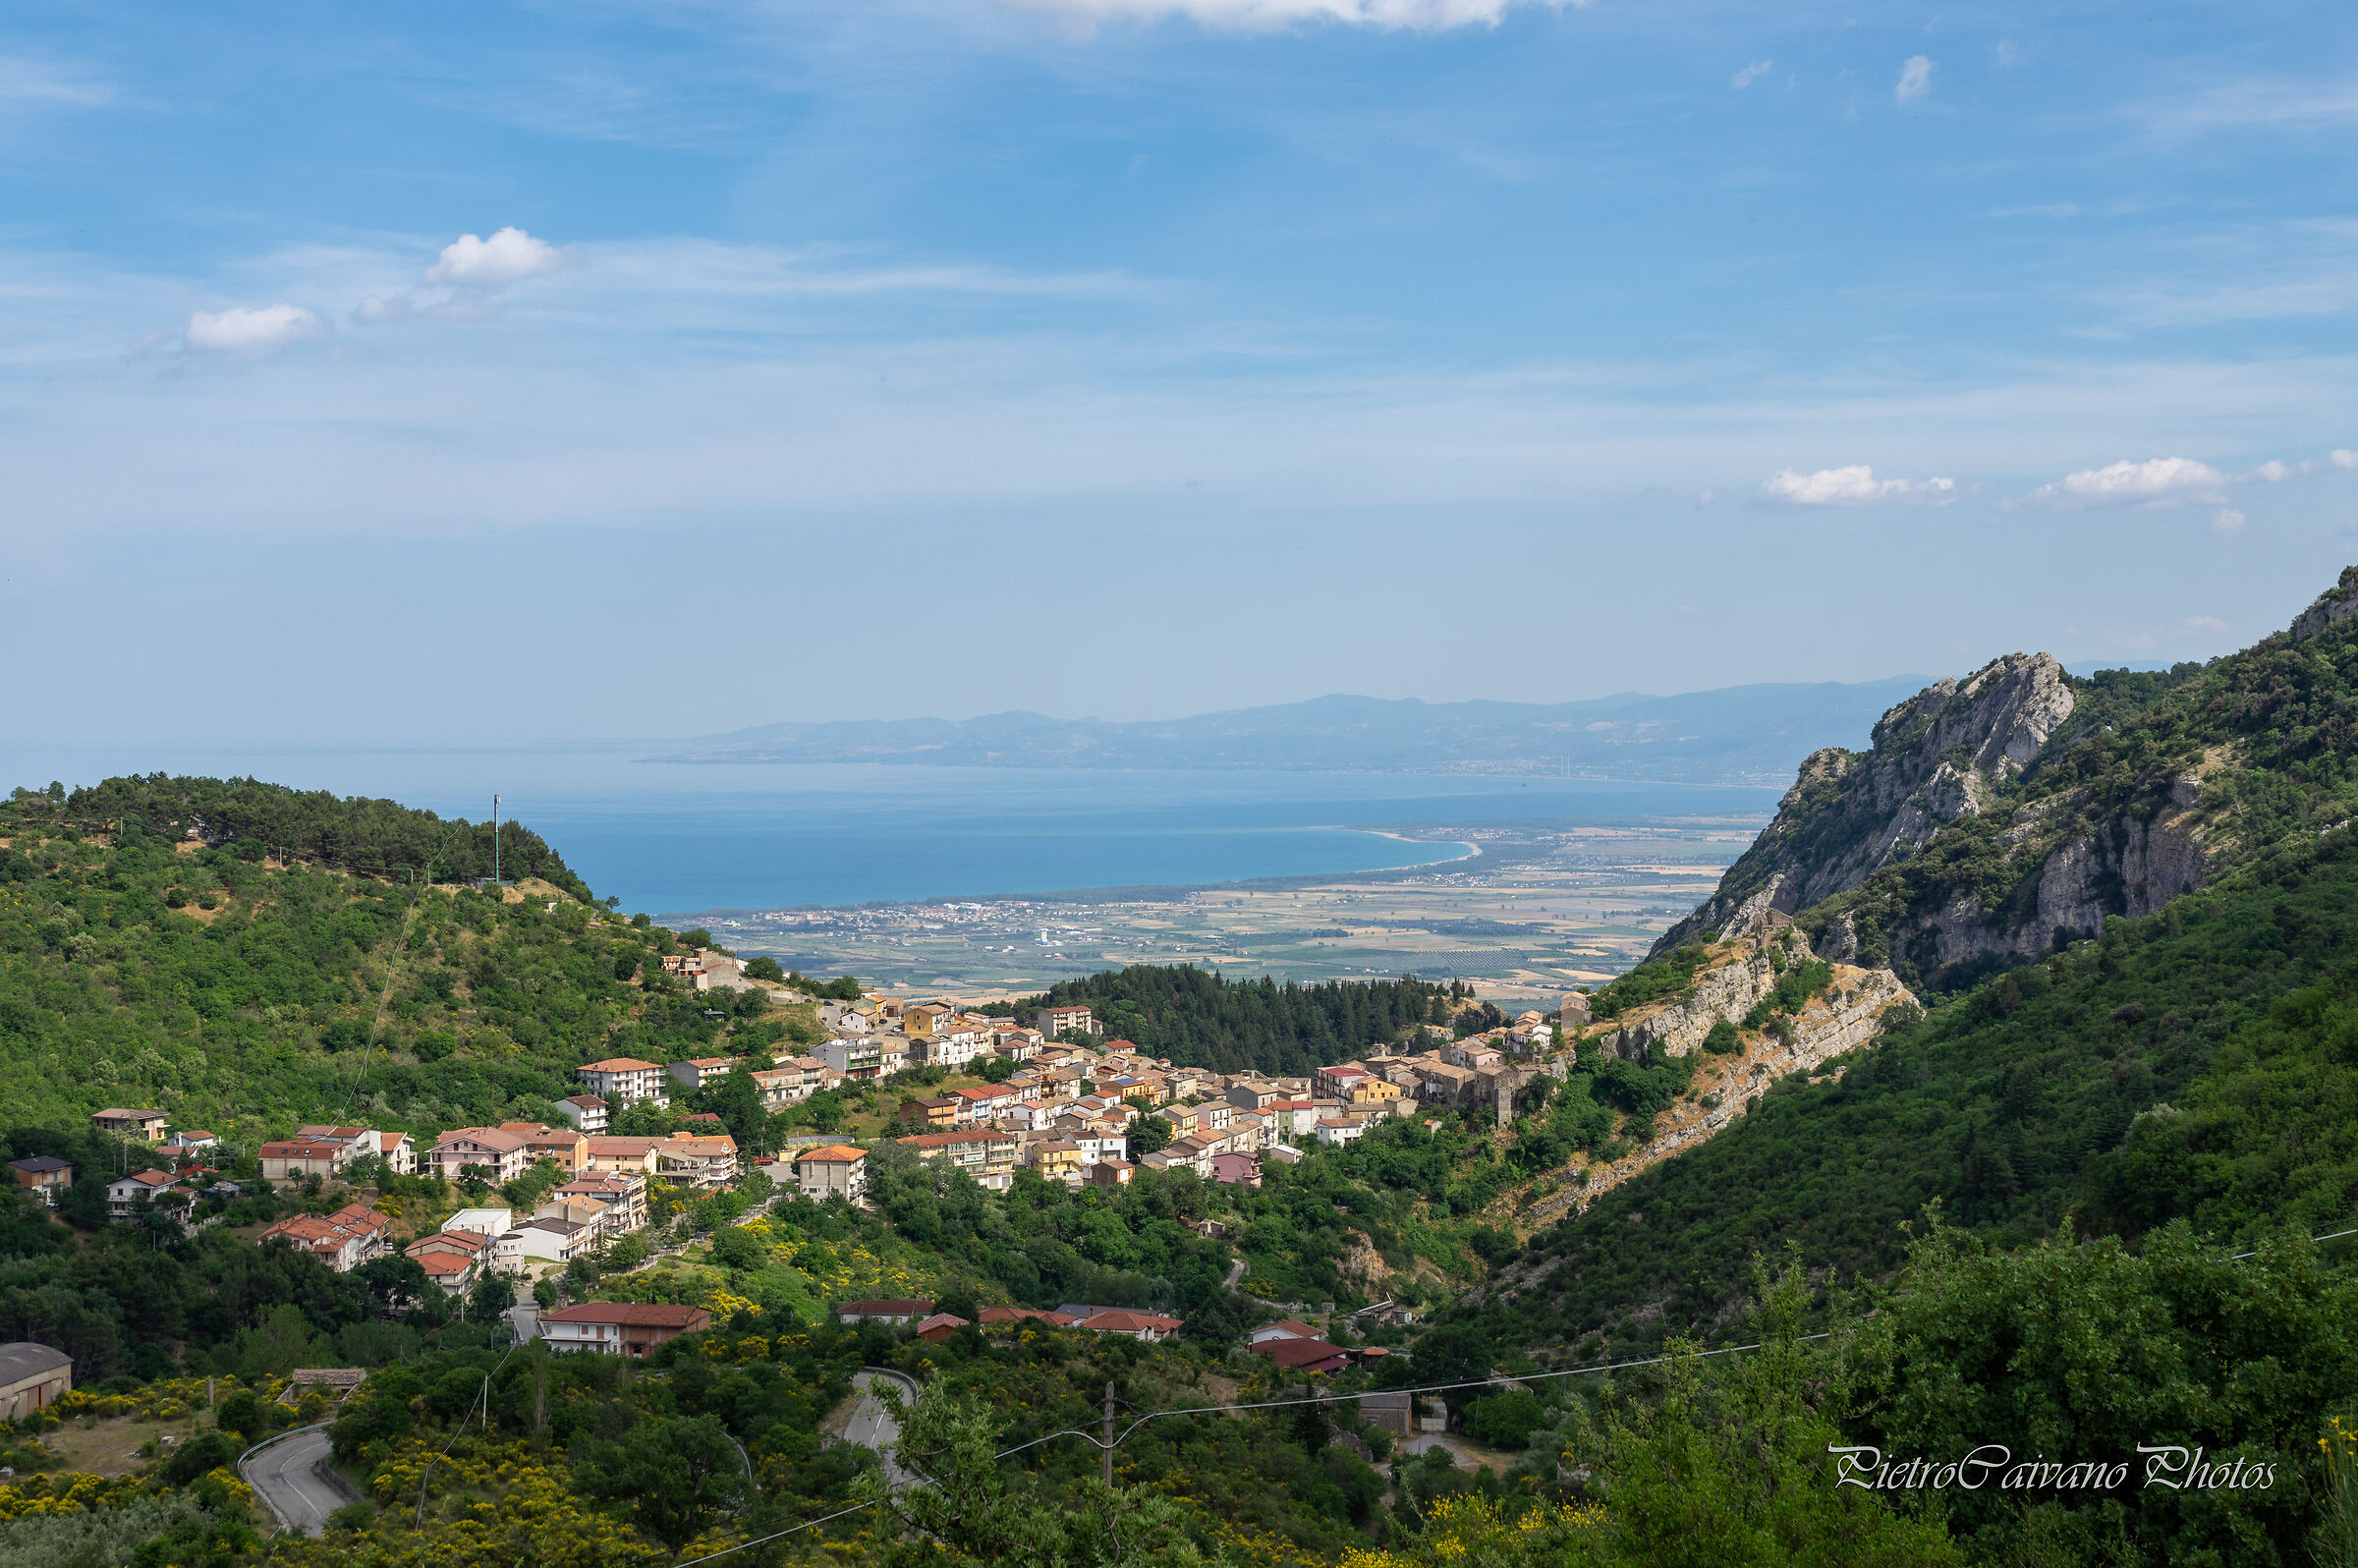 Circles of Calabria and the Plain of Sibari...